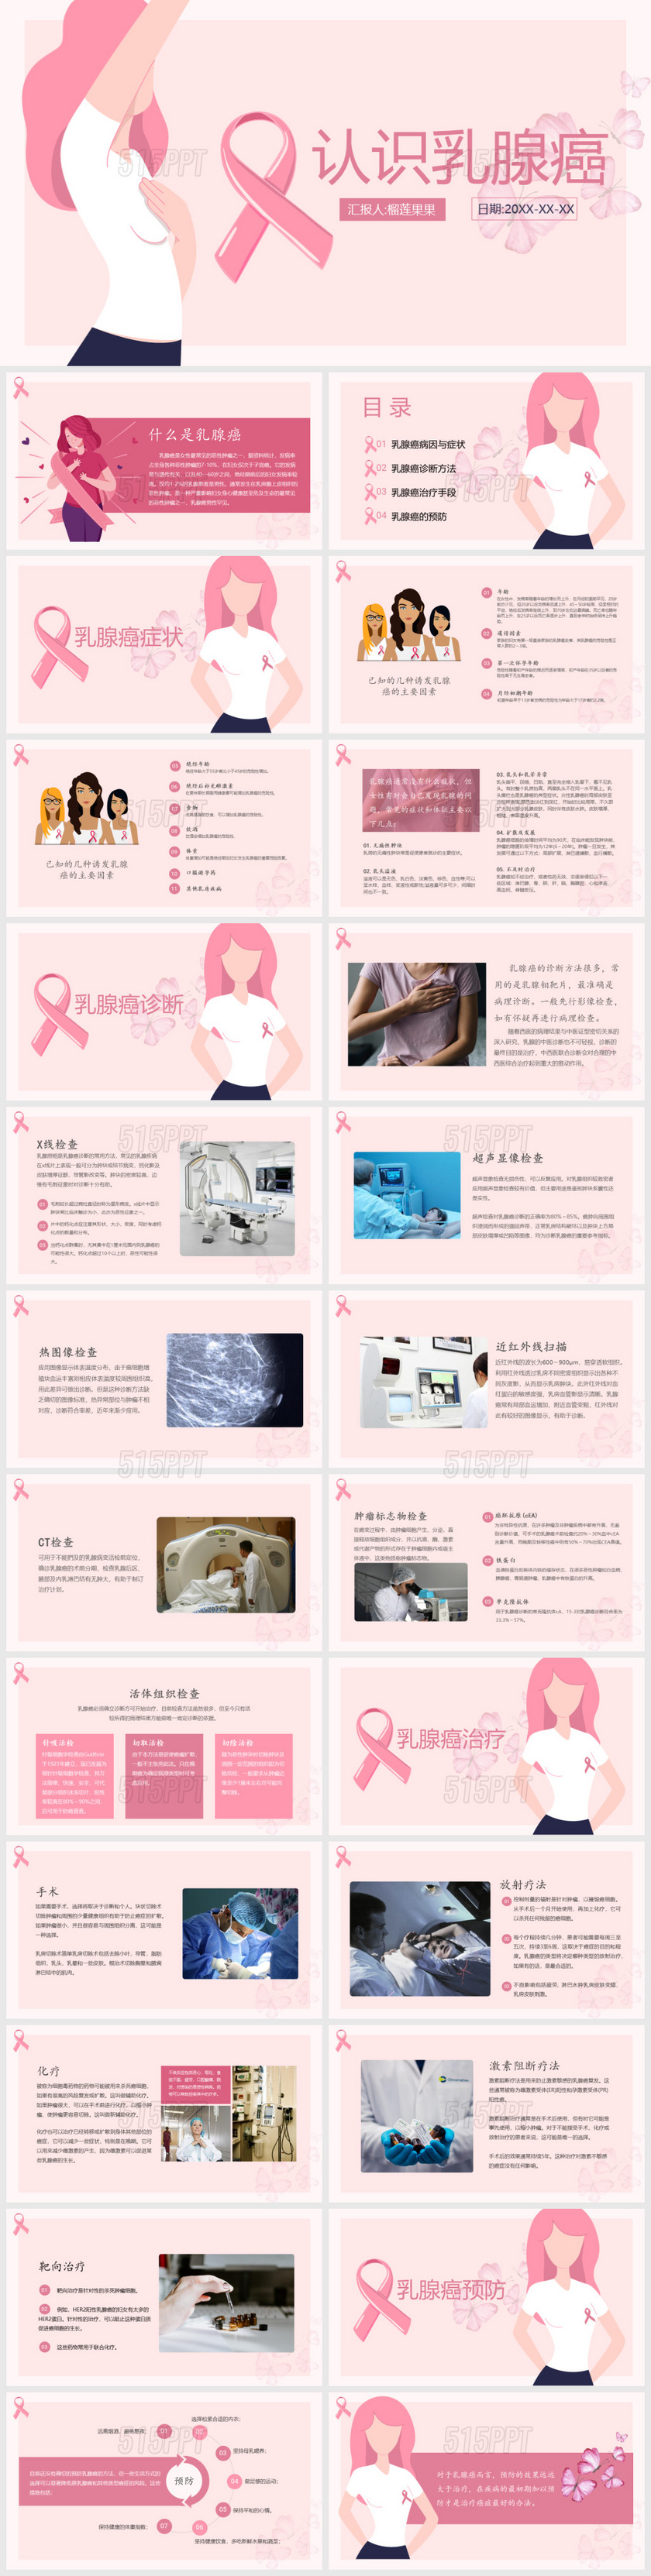 认识乳腺癌女性健康介绍PPT